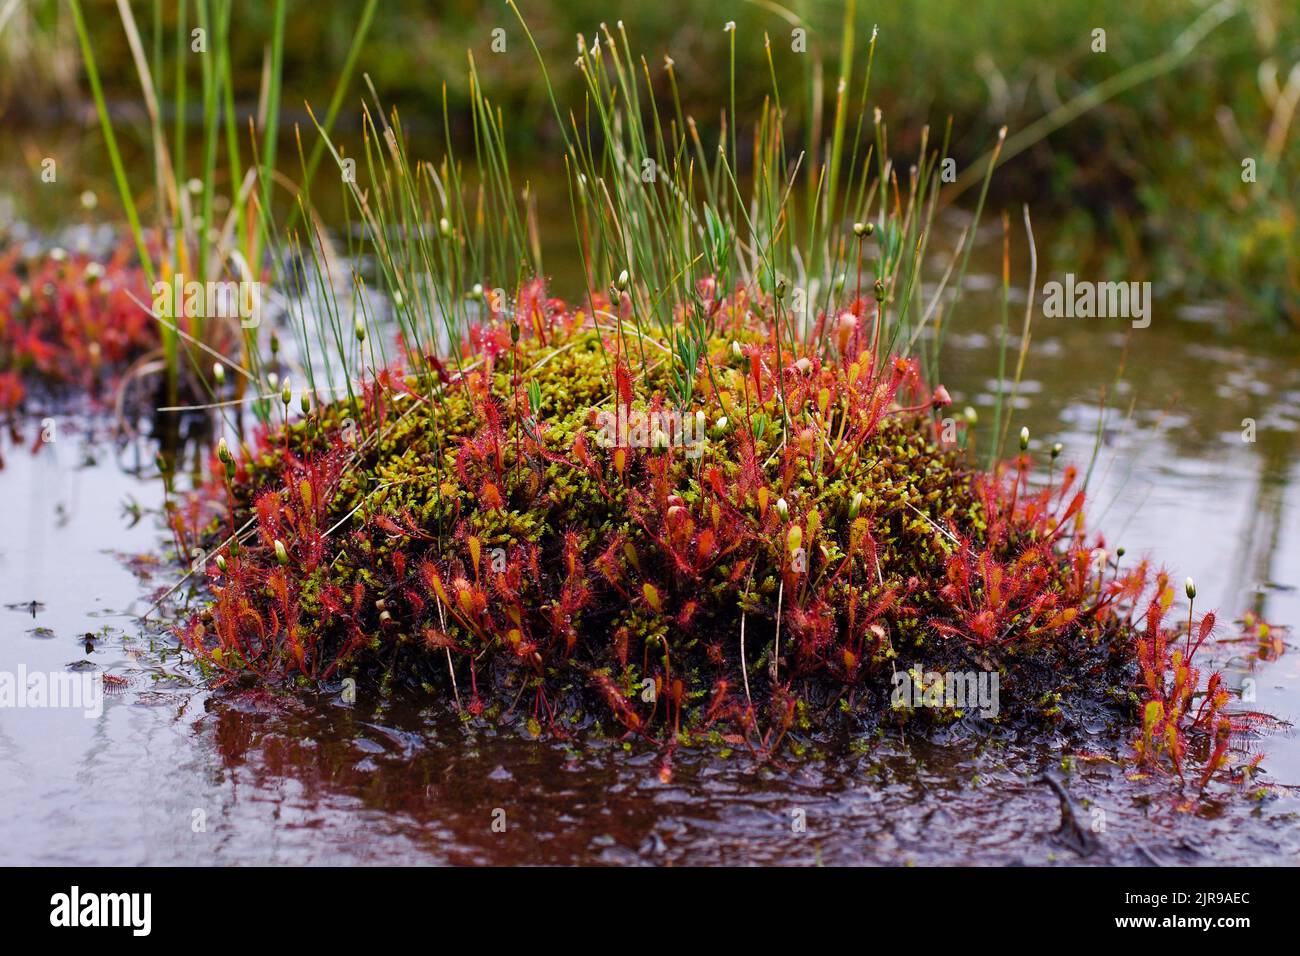 Englischer Sonnentau (Drosera anglica) auf einer Vegetationsinsel in einem Teich, Norwegen Stockfoto